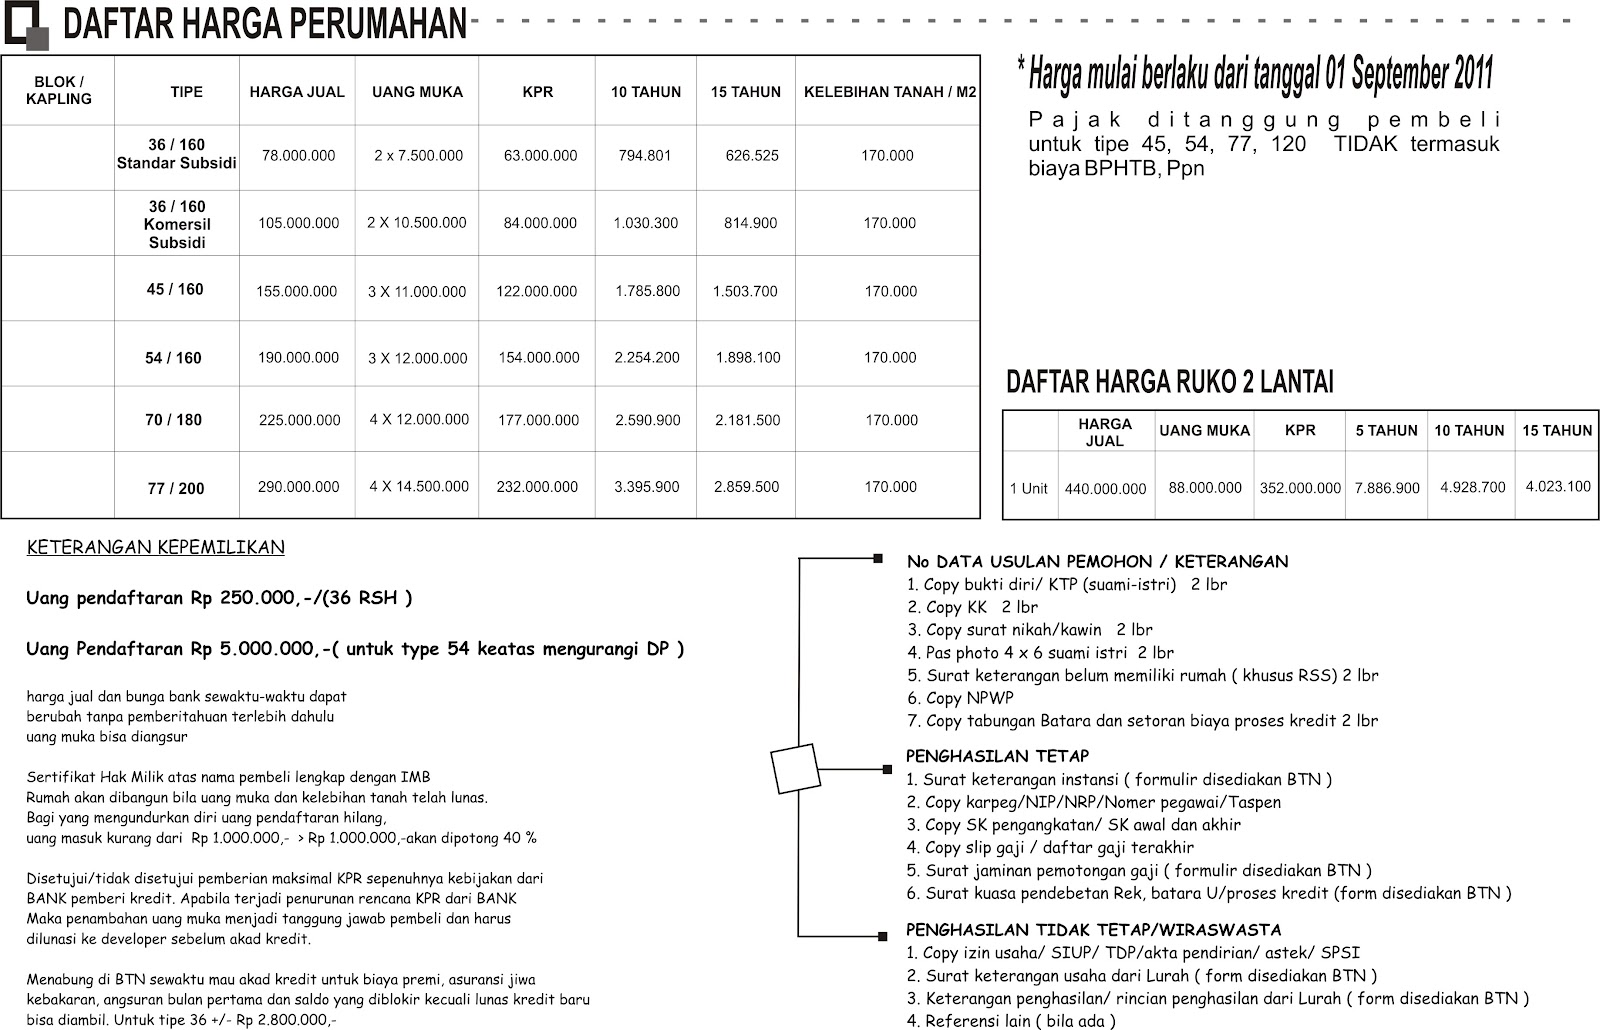  Daftar Harga  Dan Persyaratan Pengambilan Rumah Banjarbaru 